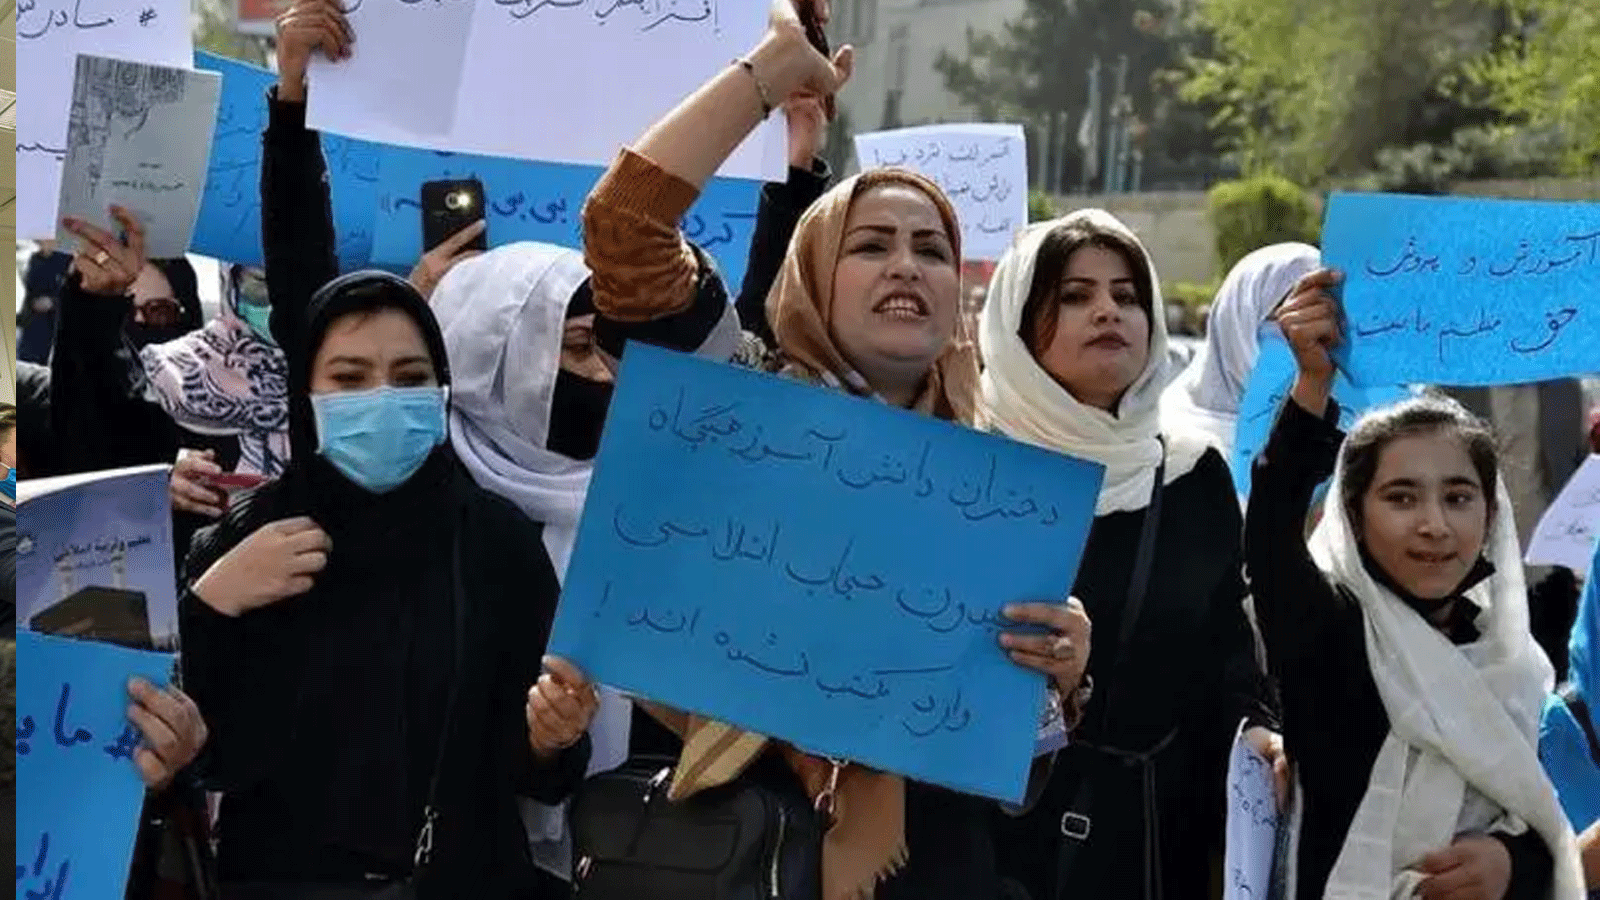 نساء وفتيات أفغانيات يشاركن في احتجاج أمام وزارة التعليم في كابول في 26 آذار\ مارس 2022، للمطالبة بإعادة فتح المدارس الثانوية للفتيات